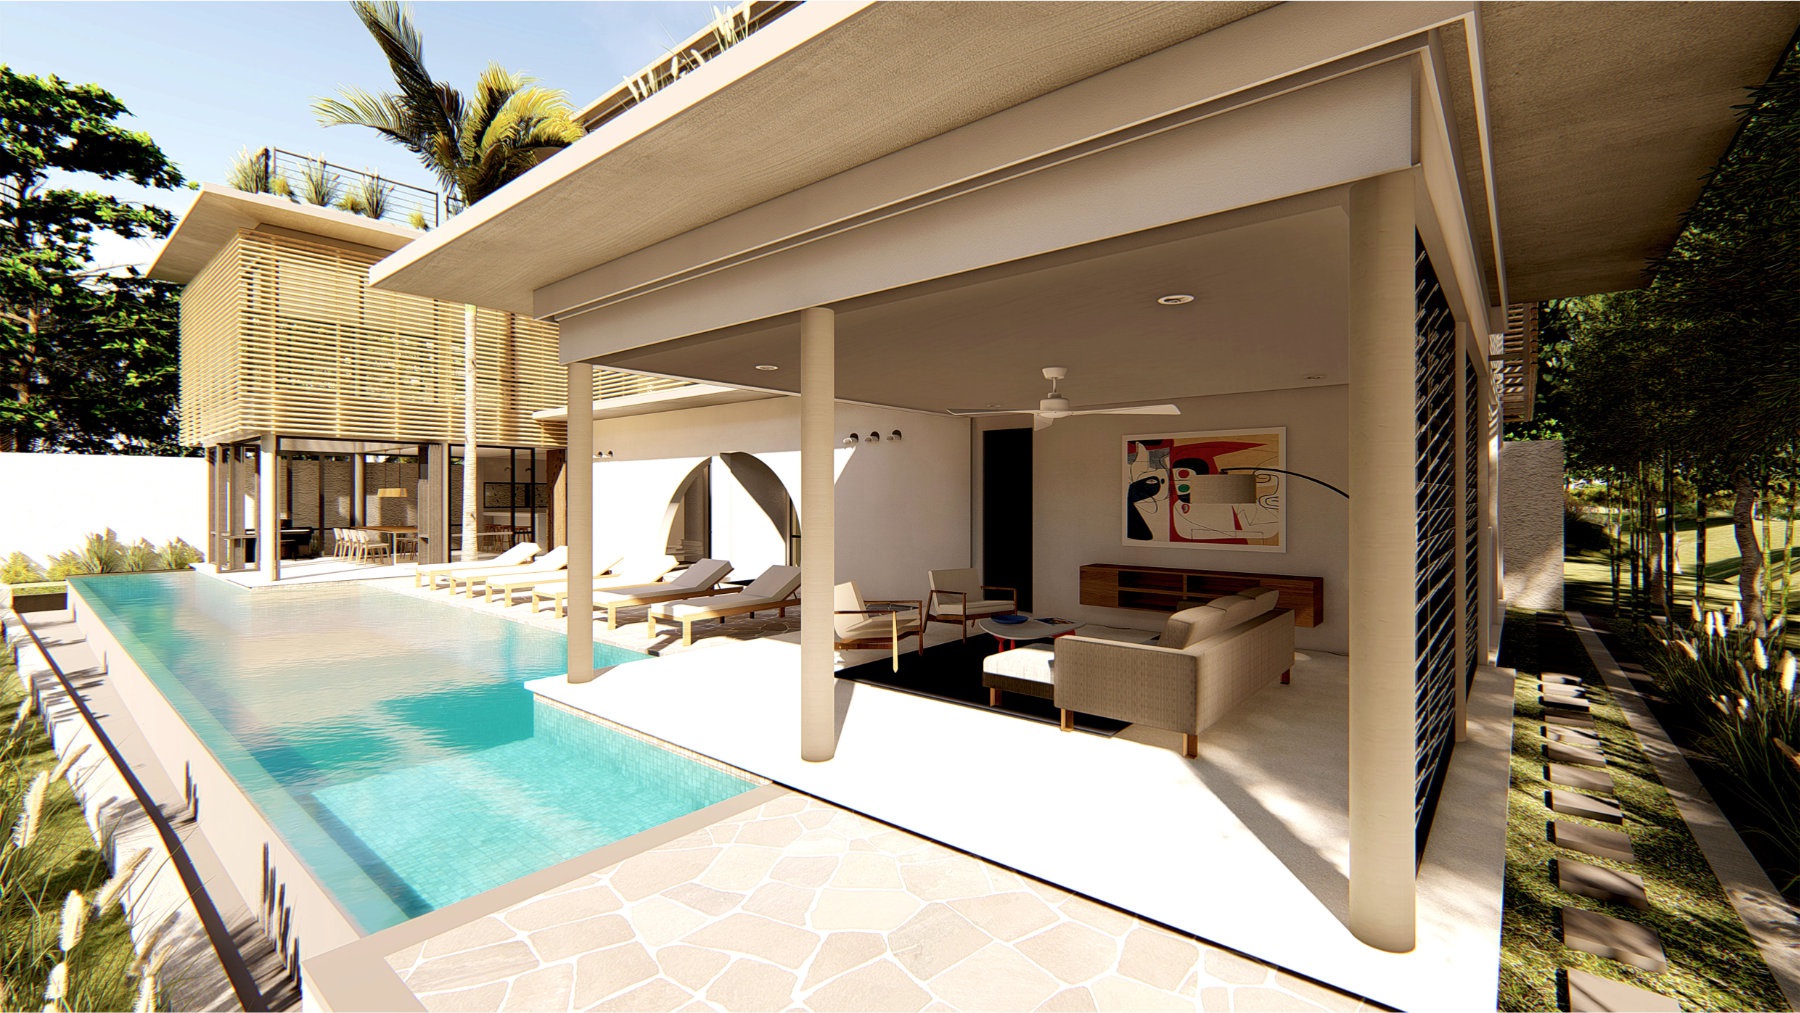 Design Assembly - Bisma Villa - Bali Architect - Interior Design - Bali Villa - Swimming Pool